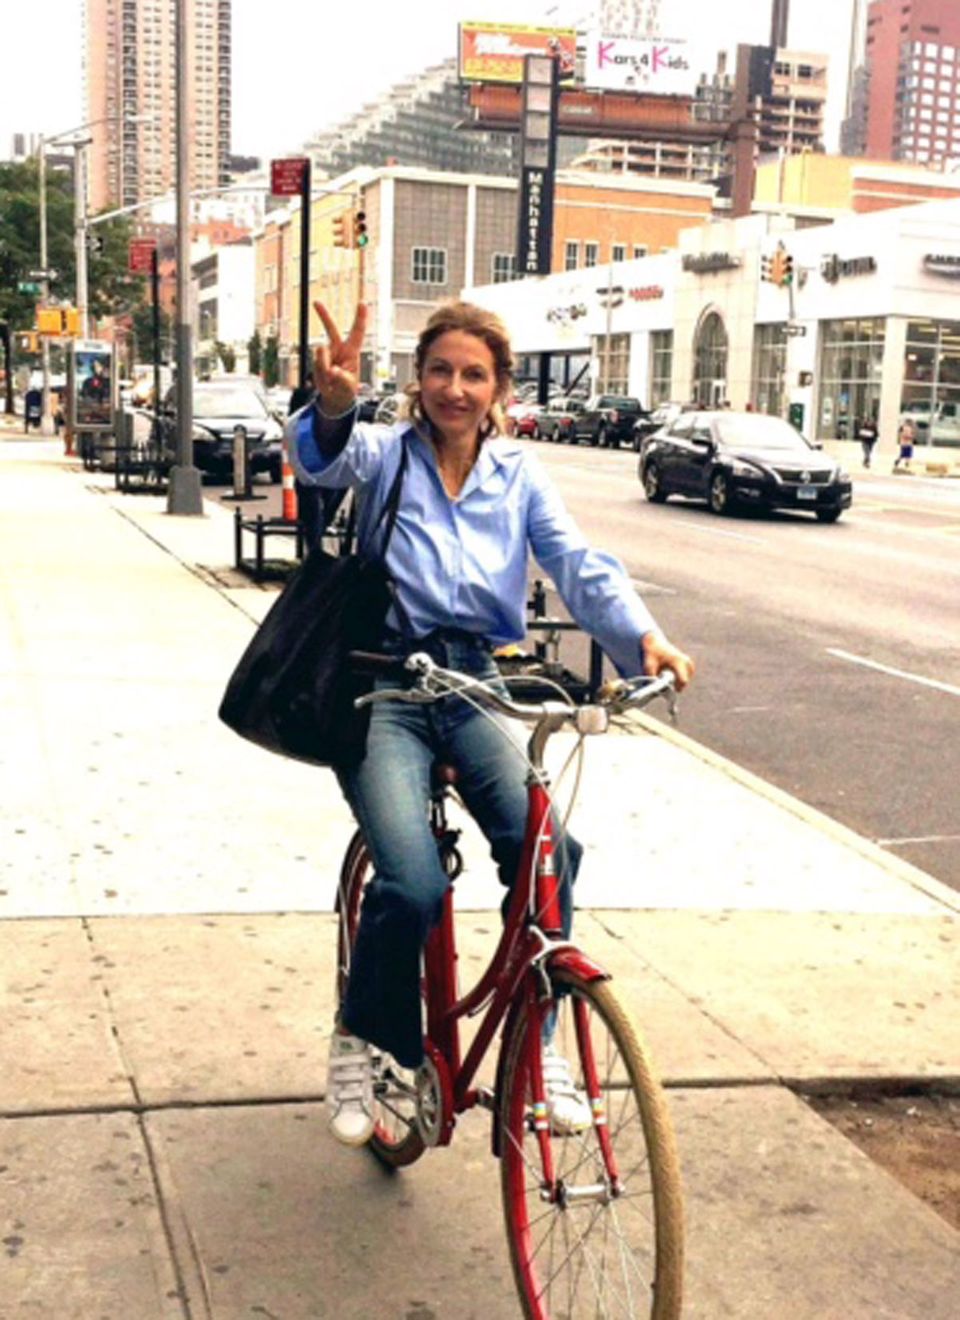 Für die Fashion-Messe in New York auf dem Bike unterwegs: GALA-Kolumnistin So Sue.